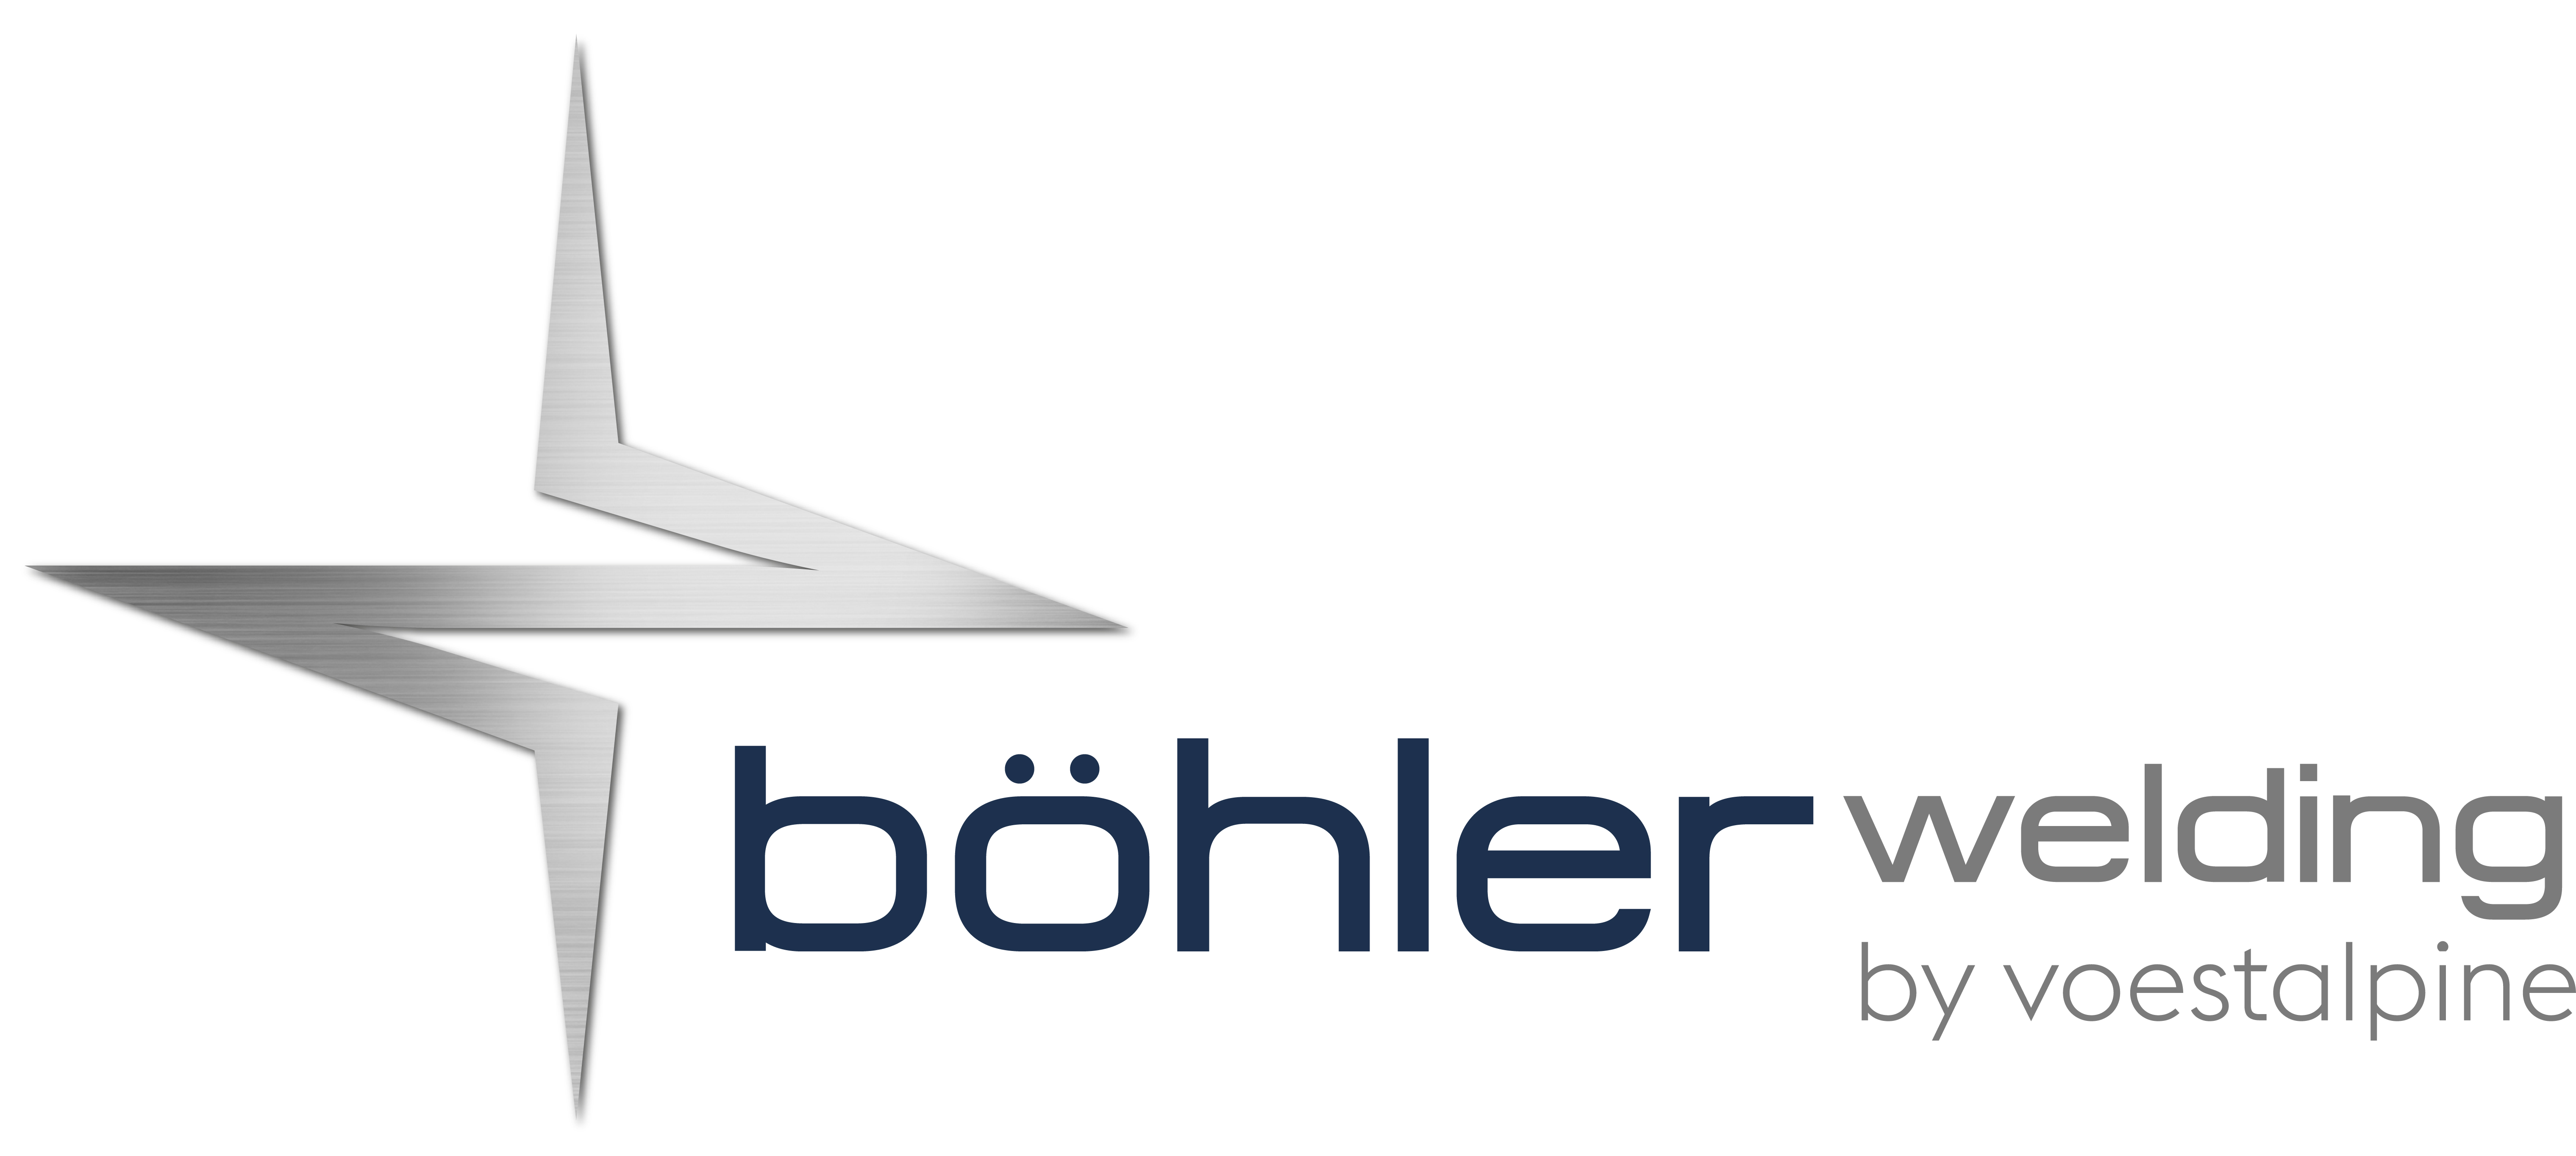 voestalpine Bohler Welding USA Technology LLC logo